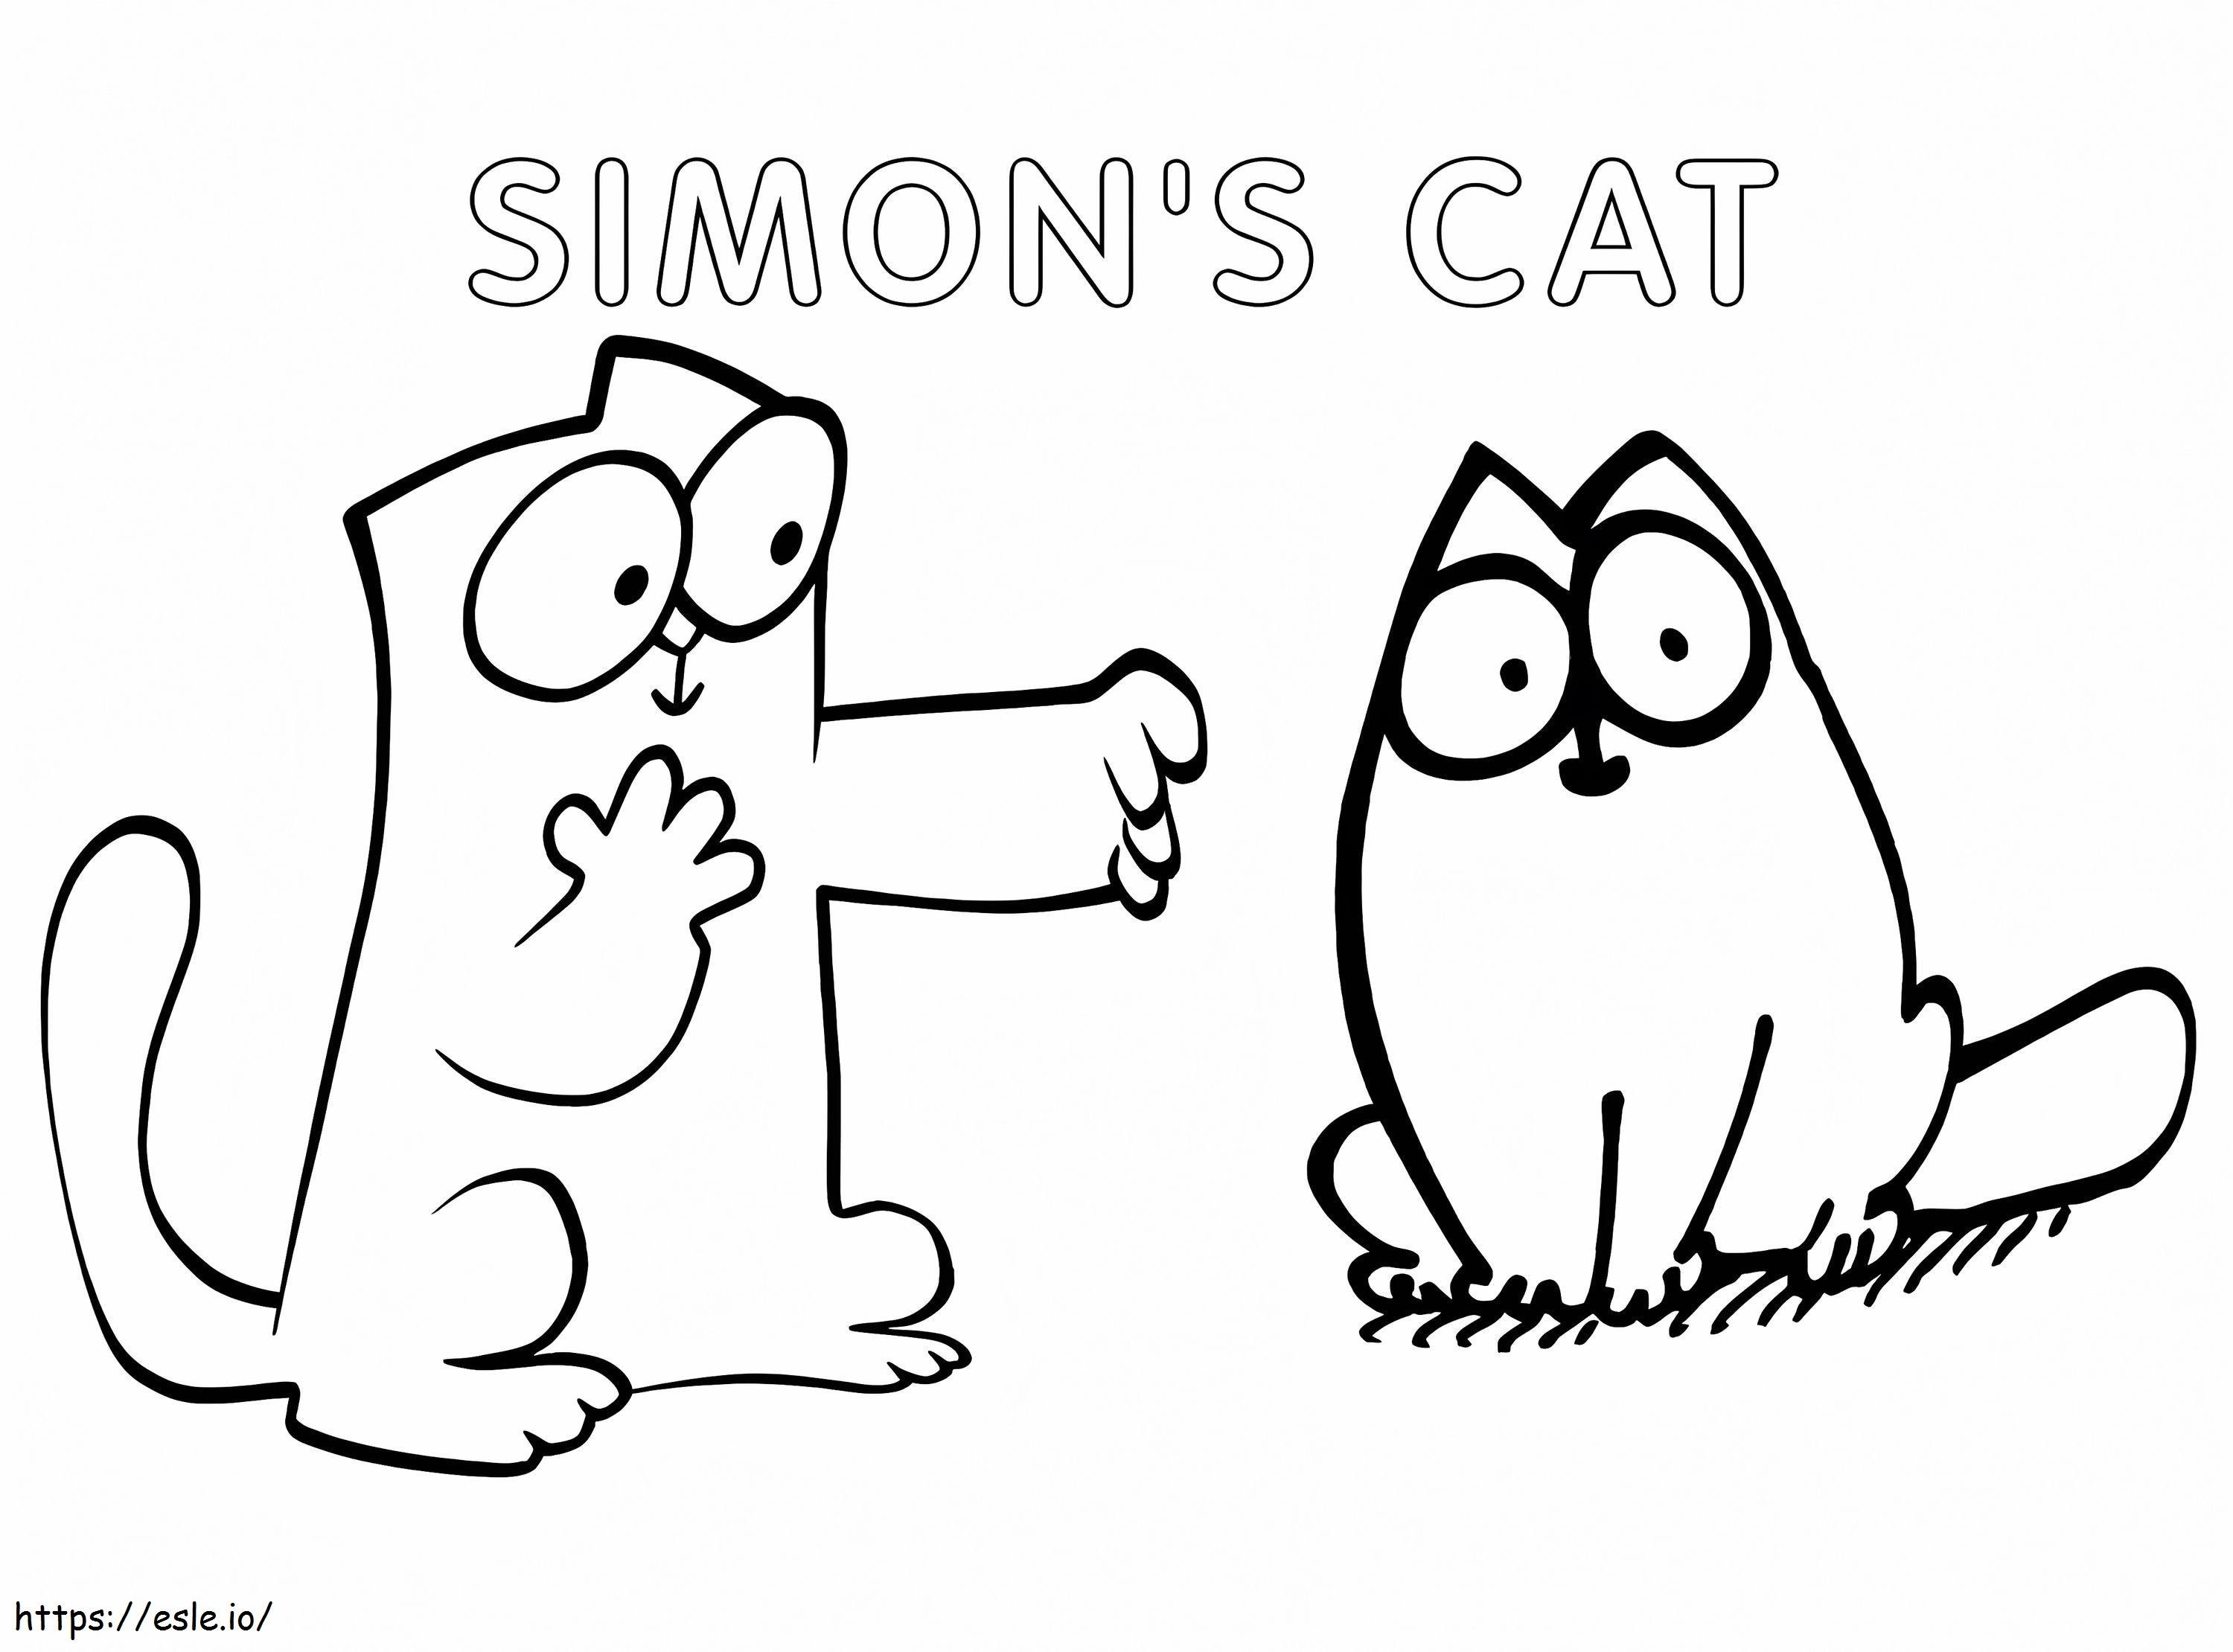 Ingyenes nyomtatható Simons Cat kifestő